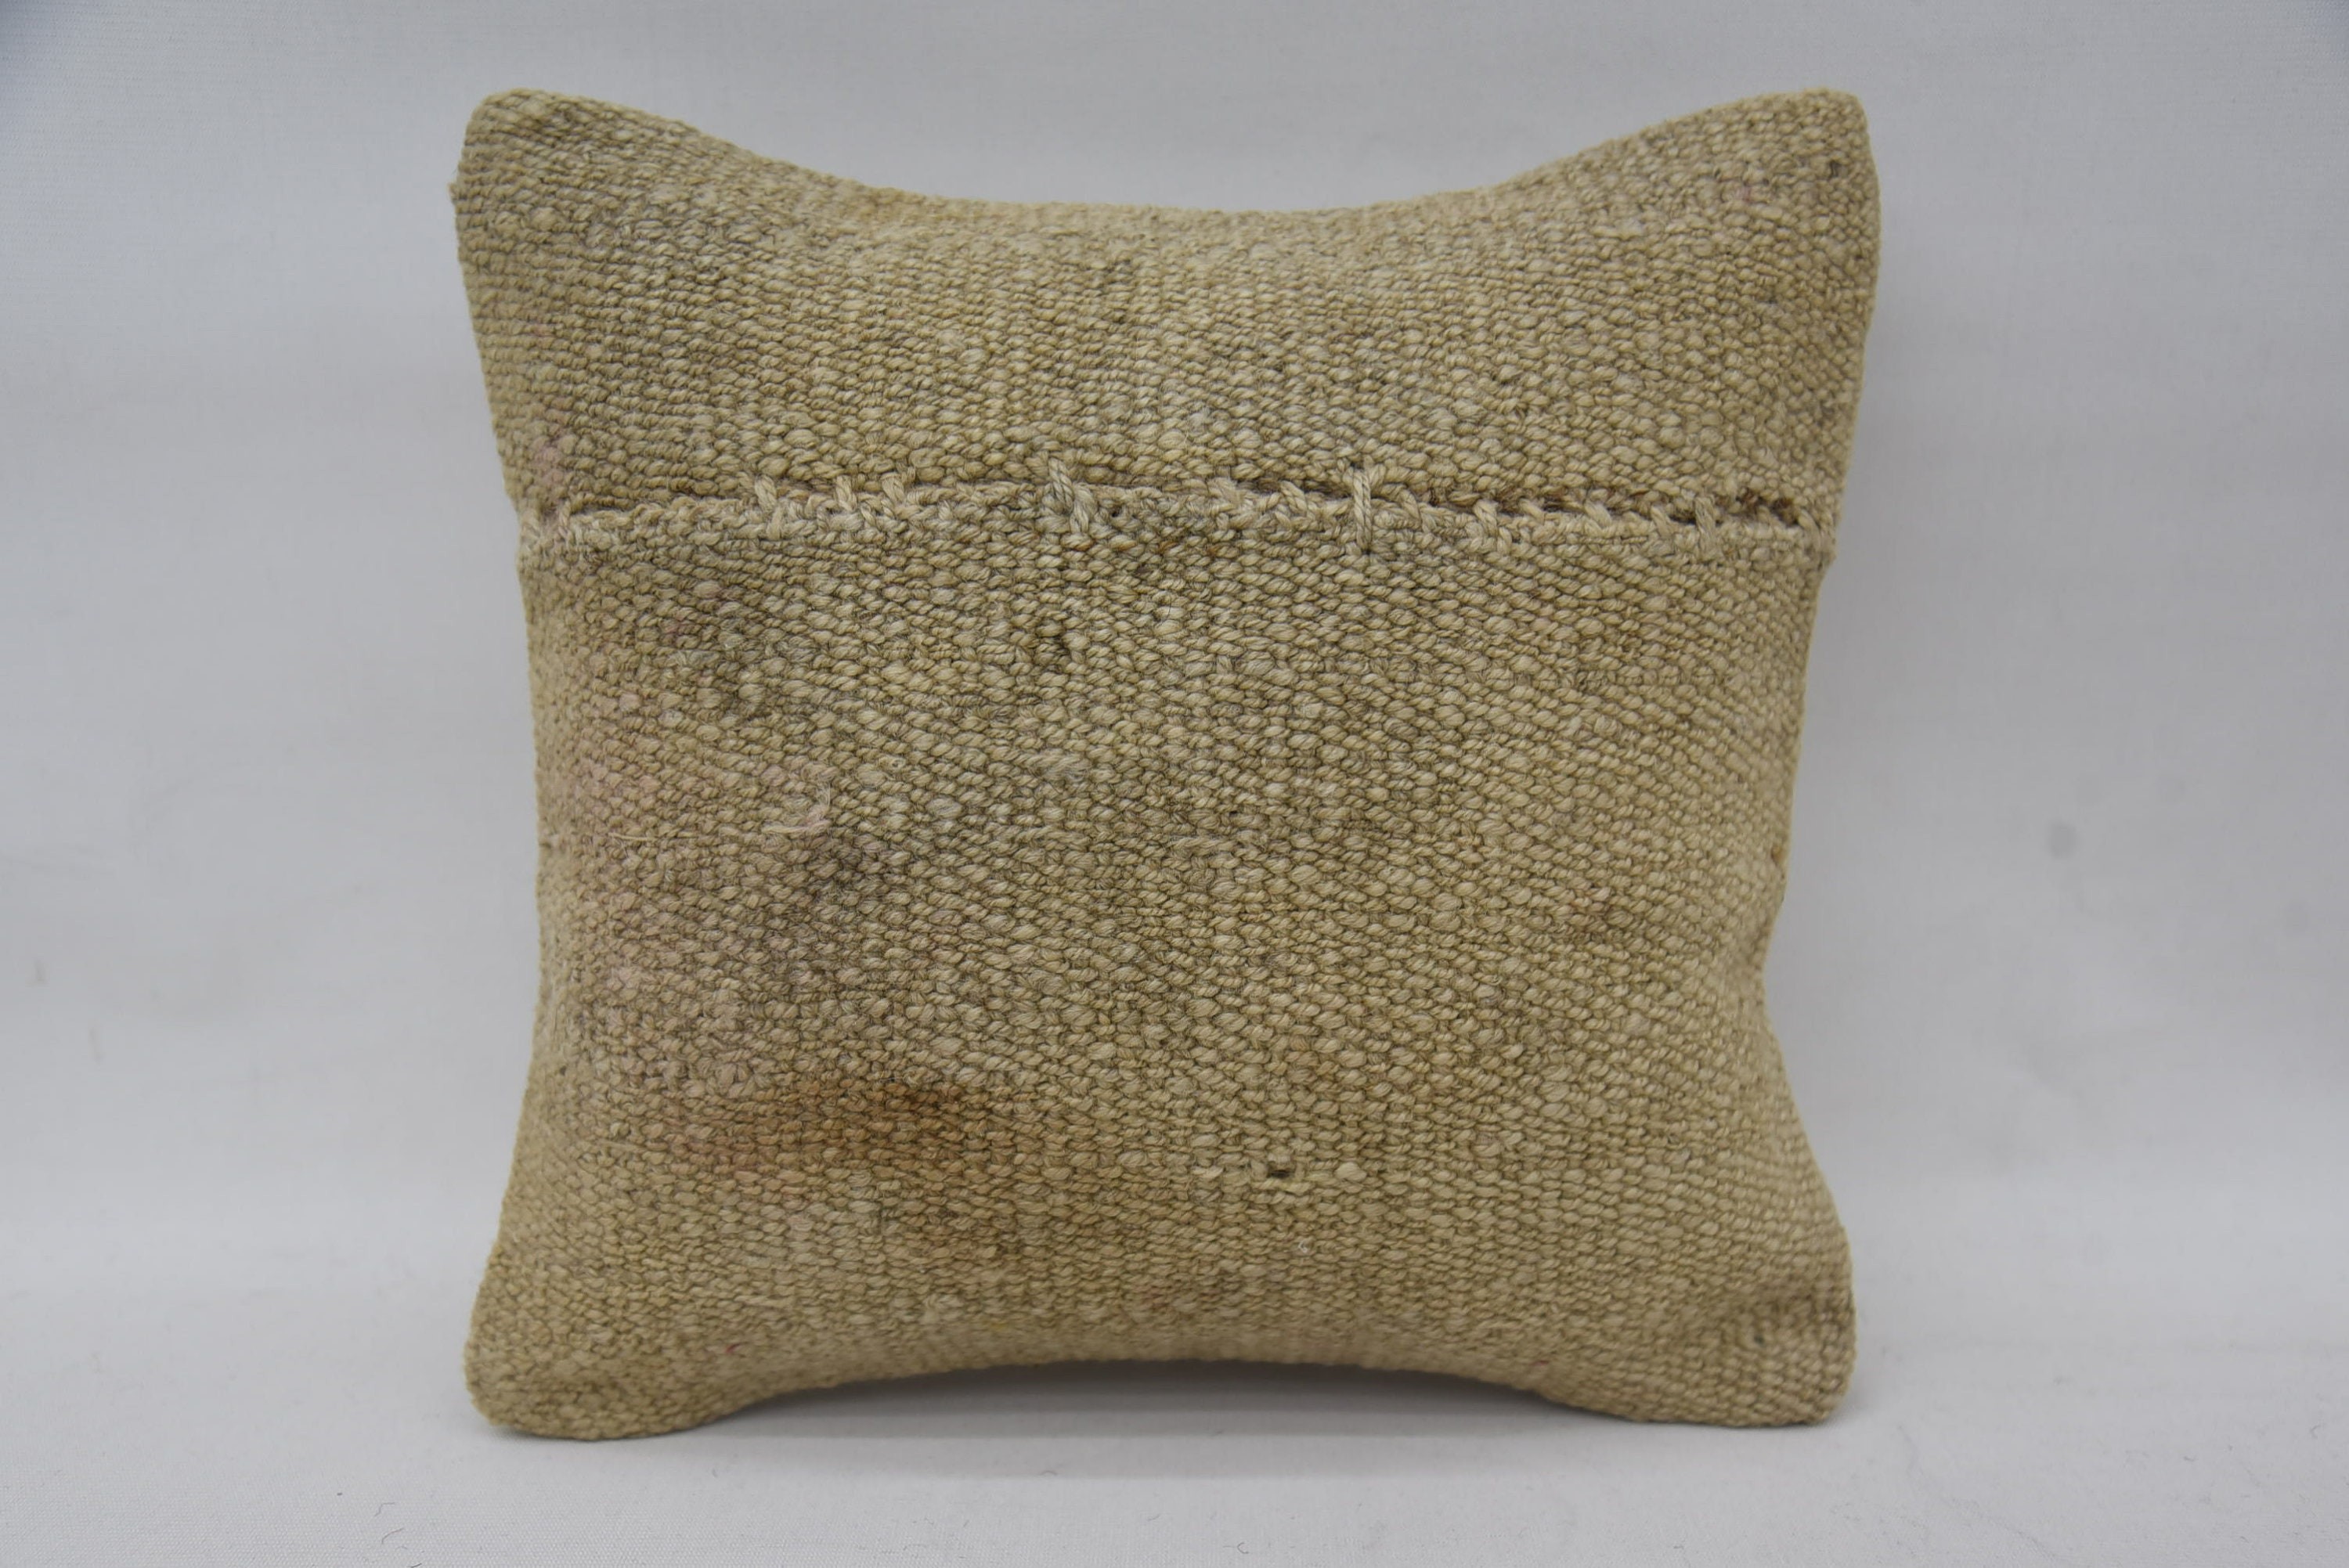 Vintage Kilim Throw Pillow, Throw Kilim Pillow, Nautical Throw Pillow, 12"x12" Beige Cushion, Knitted Pillow, Vintage Kilim Pillow